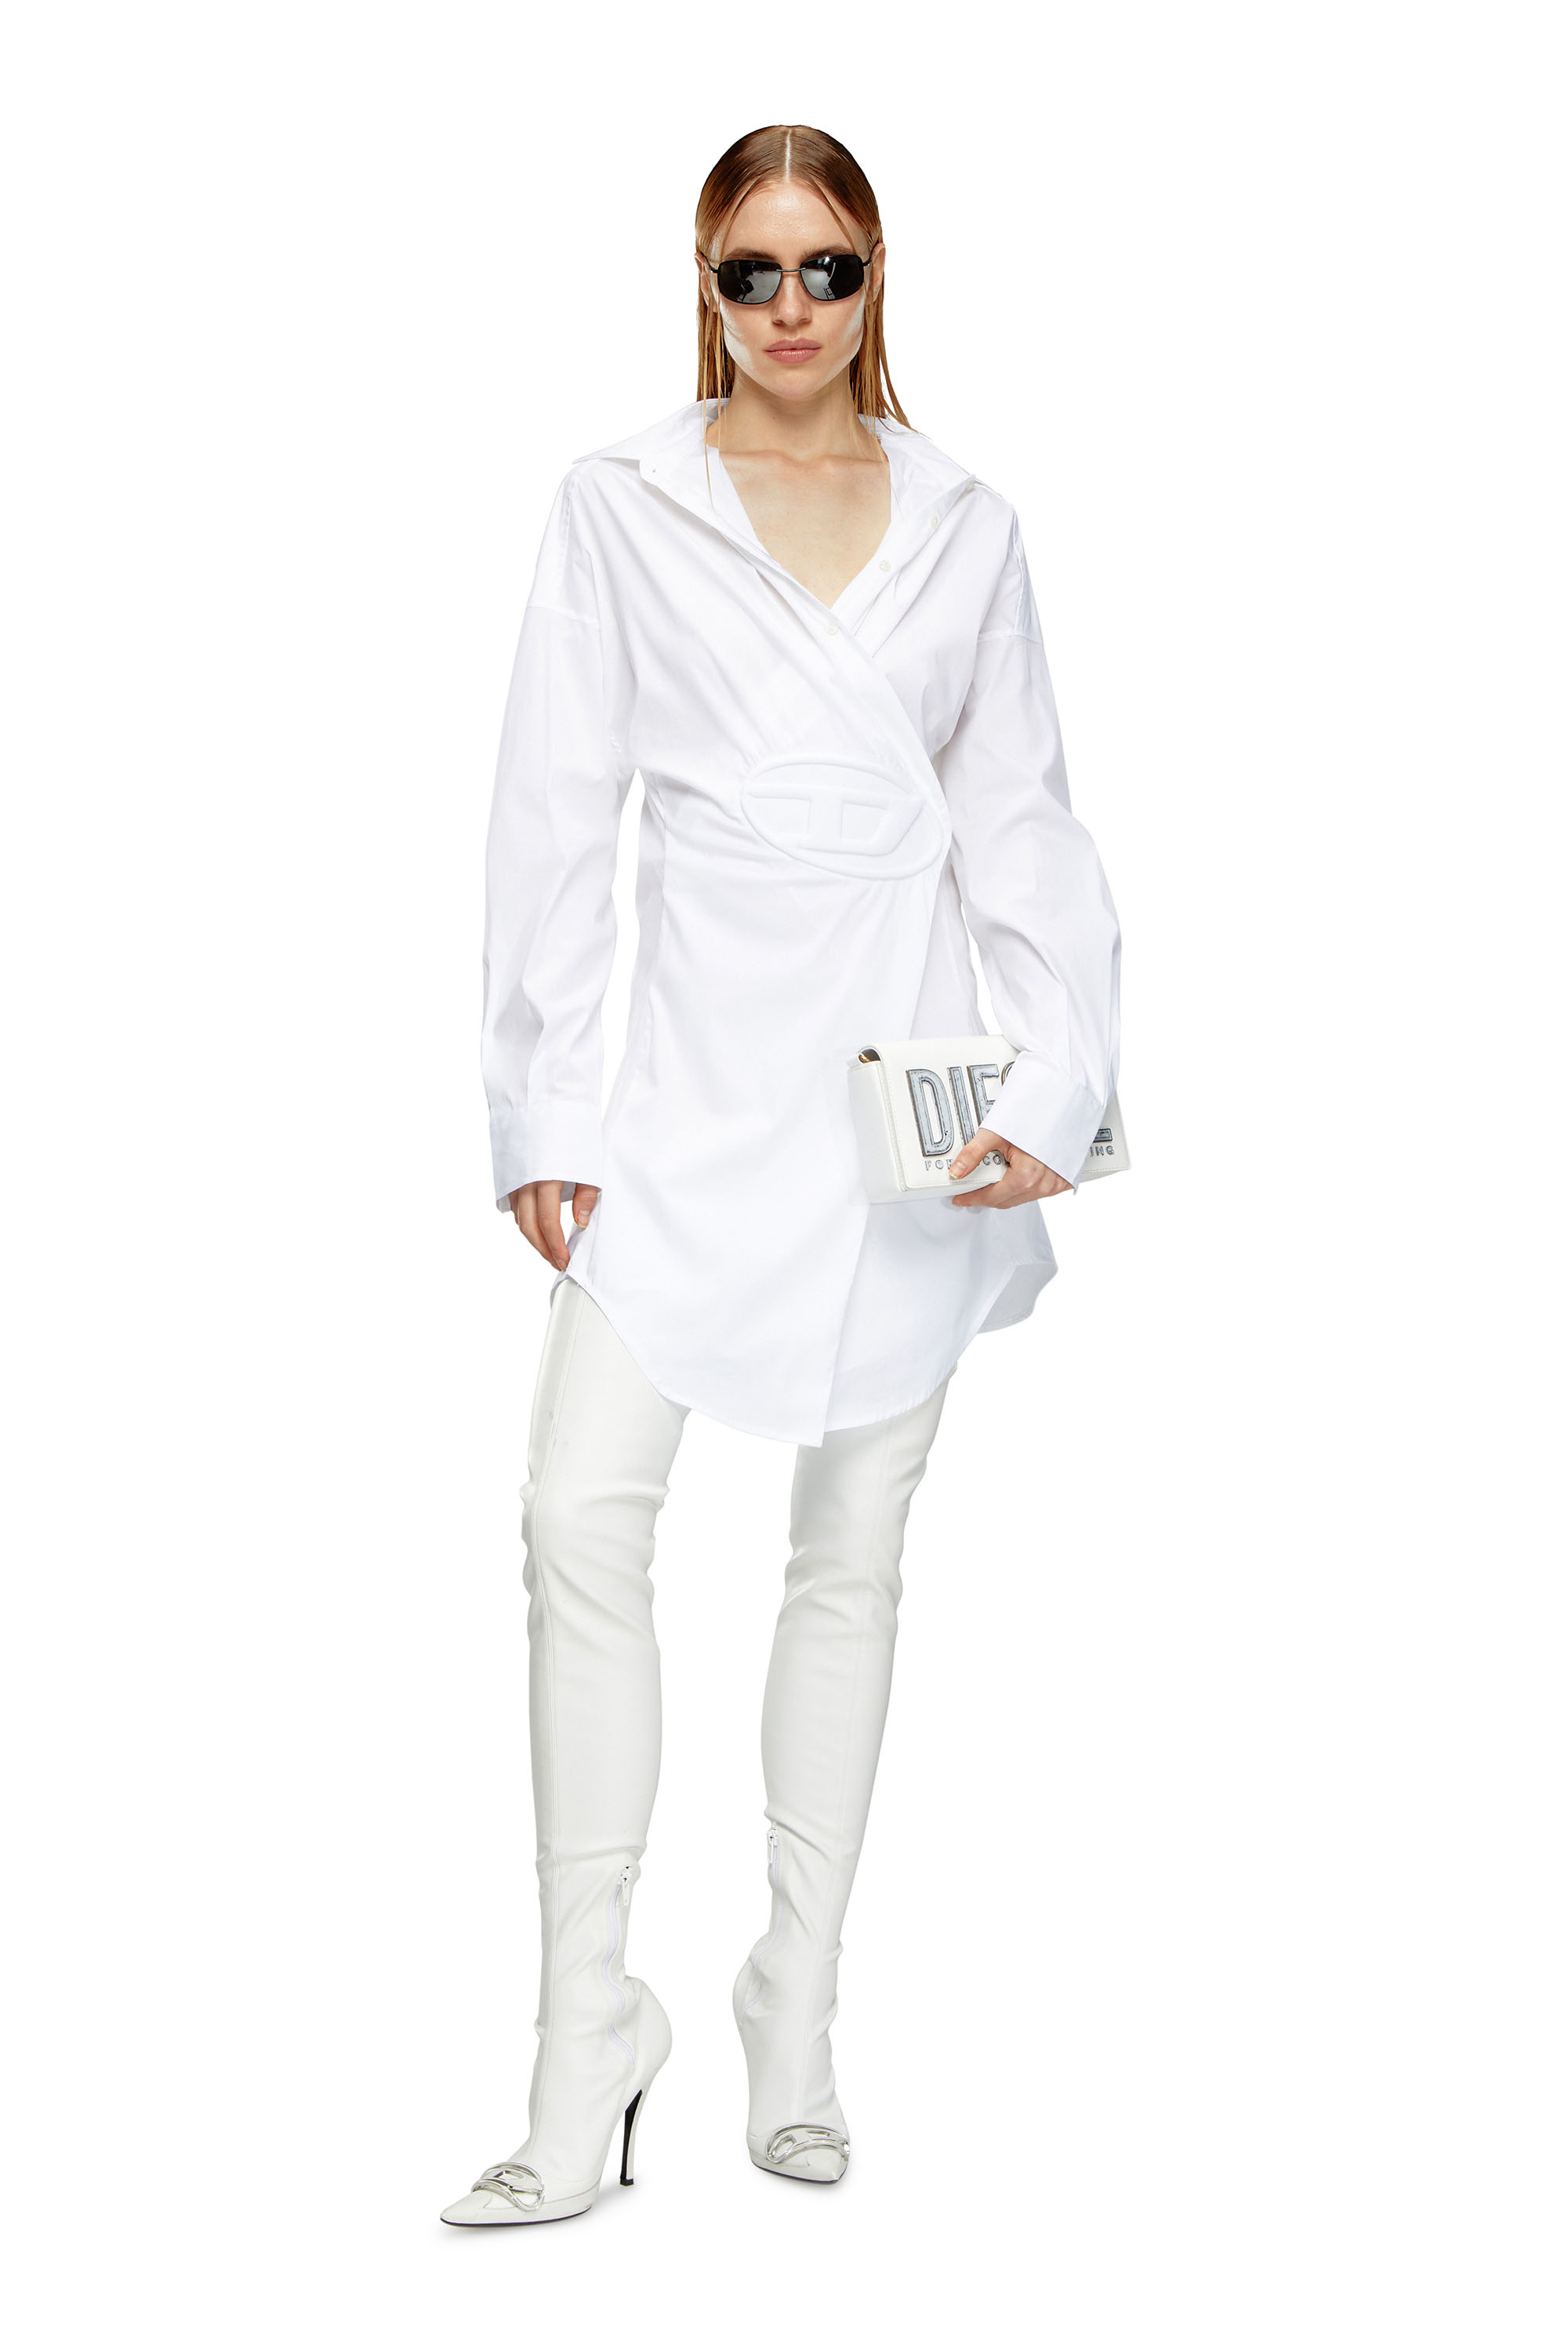 Diesel - D-SIZEN-N1, Woman Short shirt dress in stretch poplin in White - Image 1